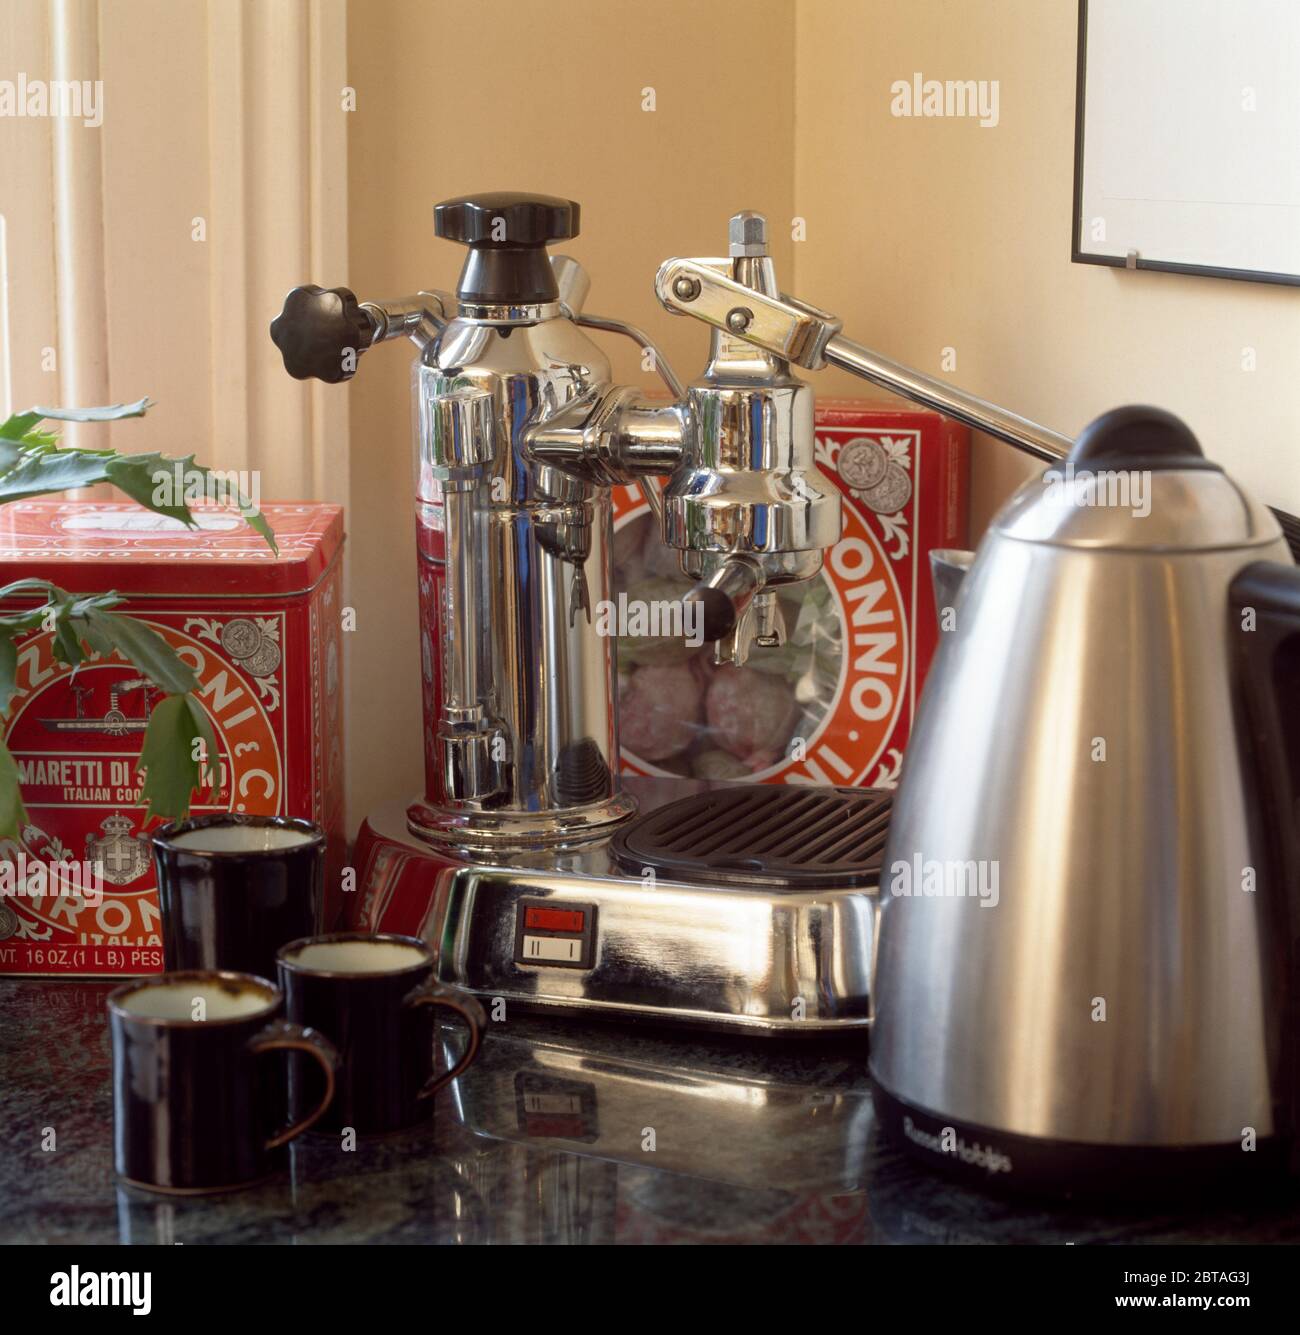 bollitore in acciaio inox e macchina per il caffè con tazze e barattoli  Foto stock - Alamy